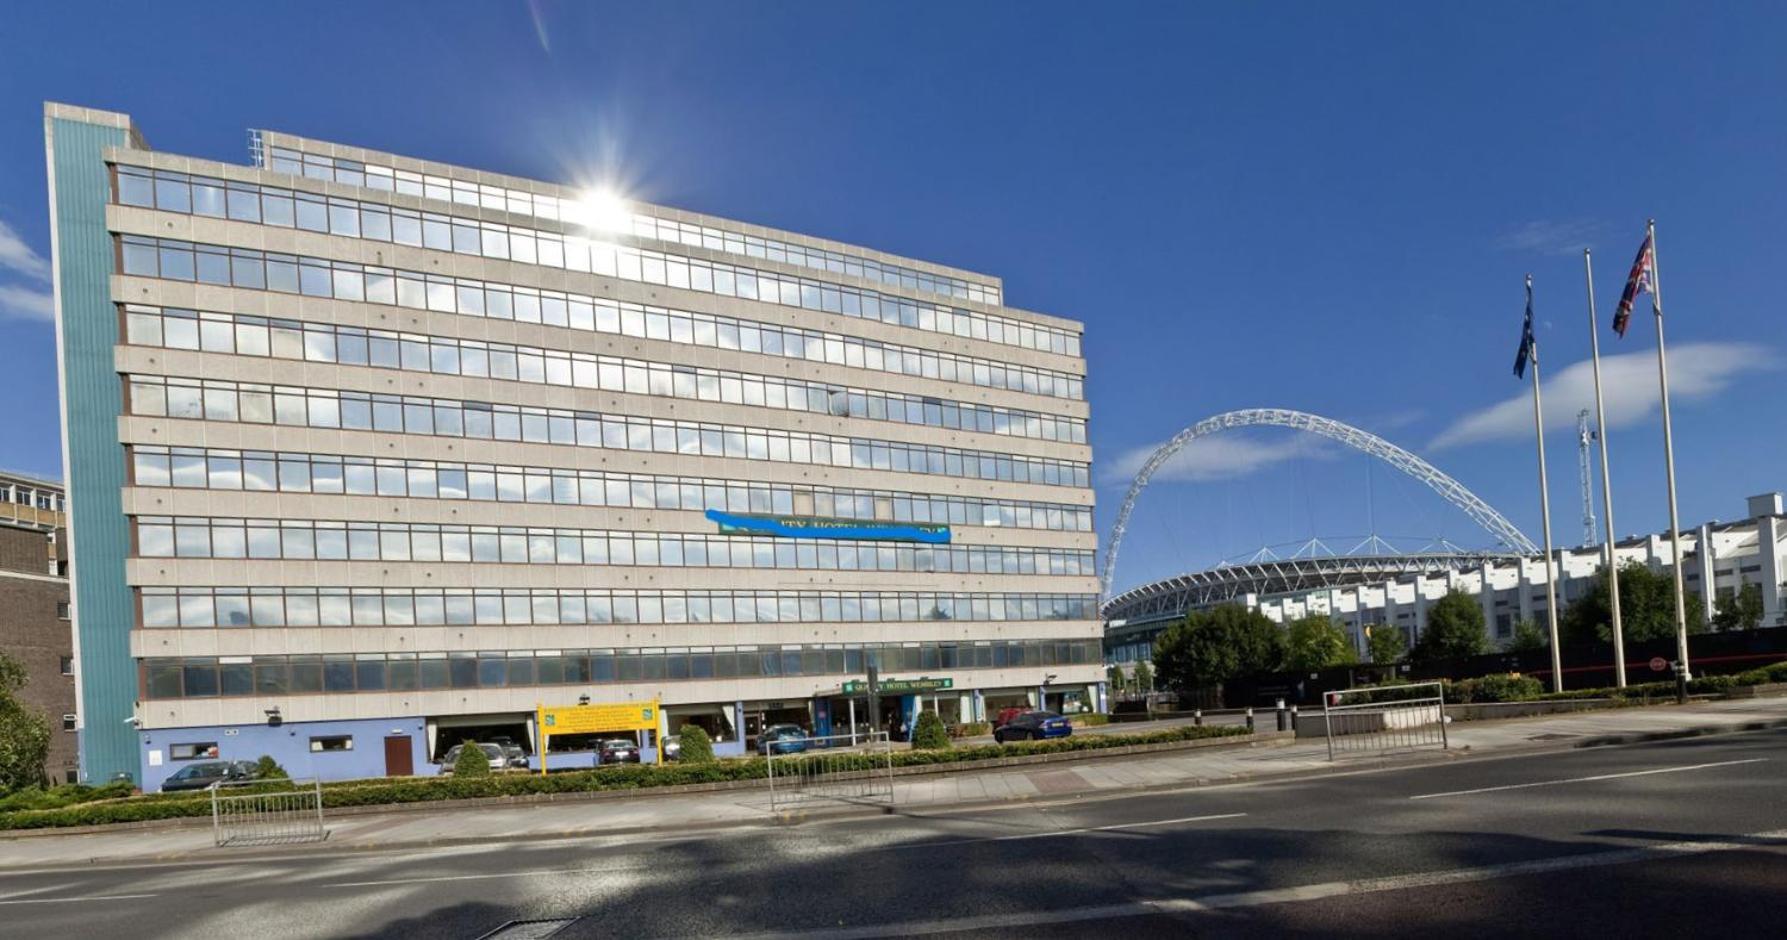 London - Wembley International Hotel Zewnętrze zdjęcie